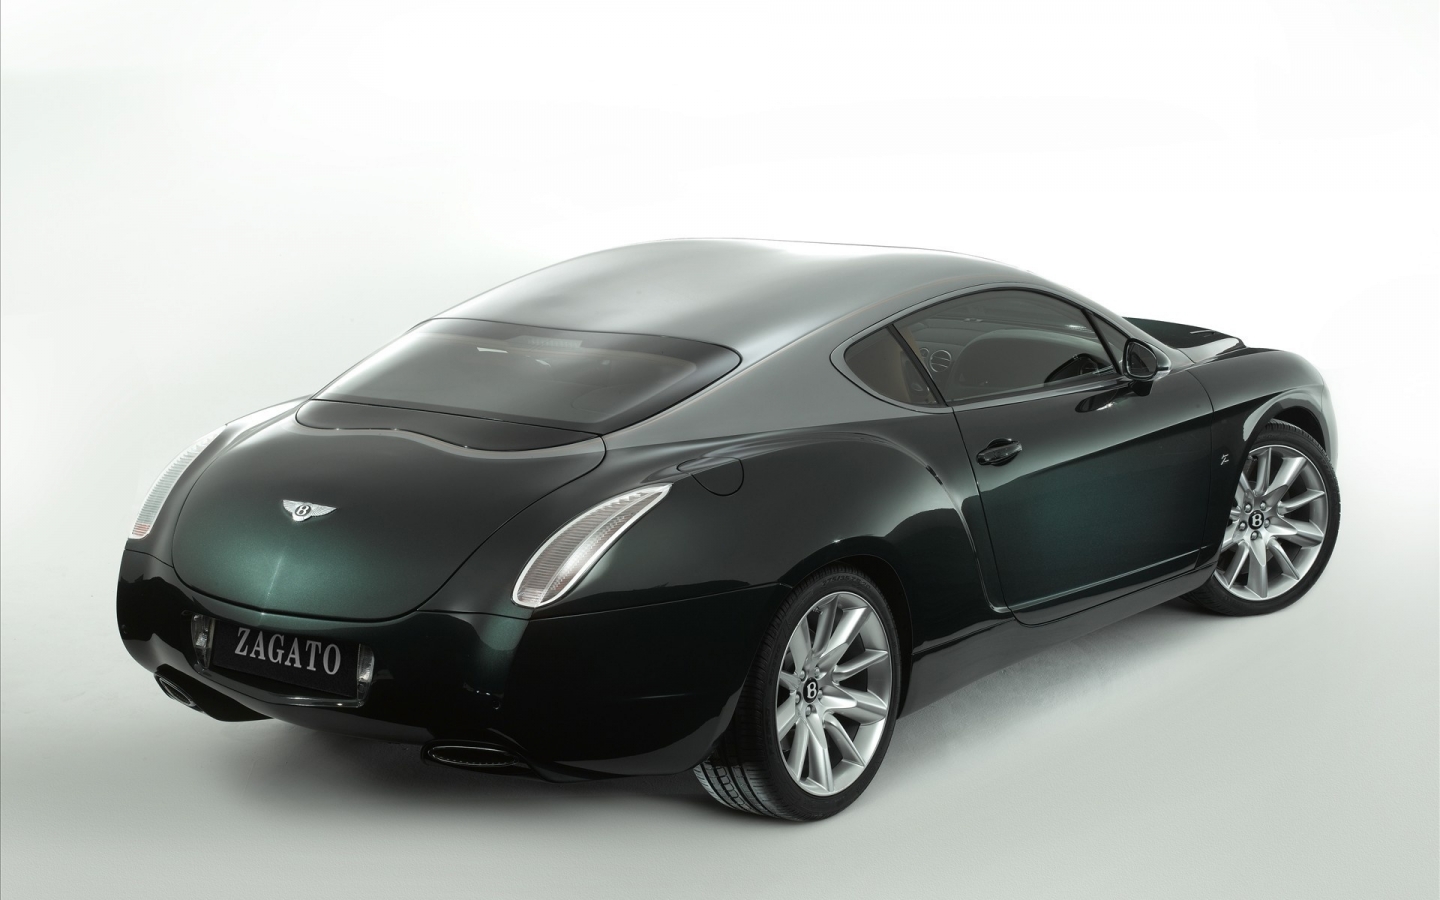 Bentley Zagato Rear for 1440 x 900 widescreen resolution